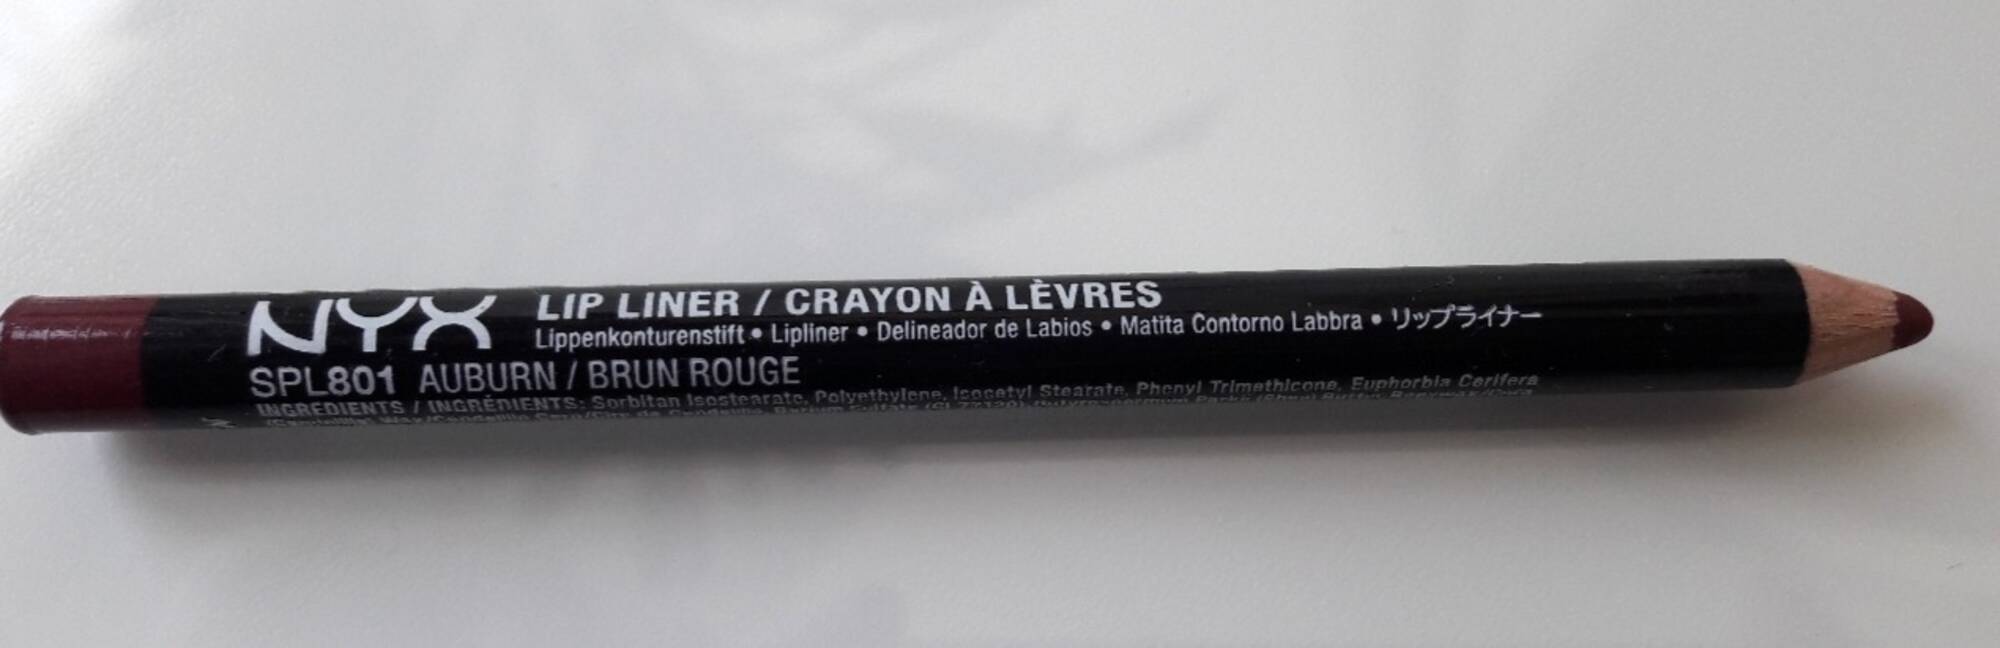 NYX - Crayon à lèvres - SPL801 brun rouge